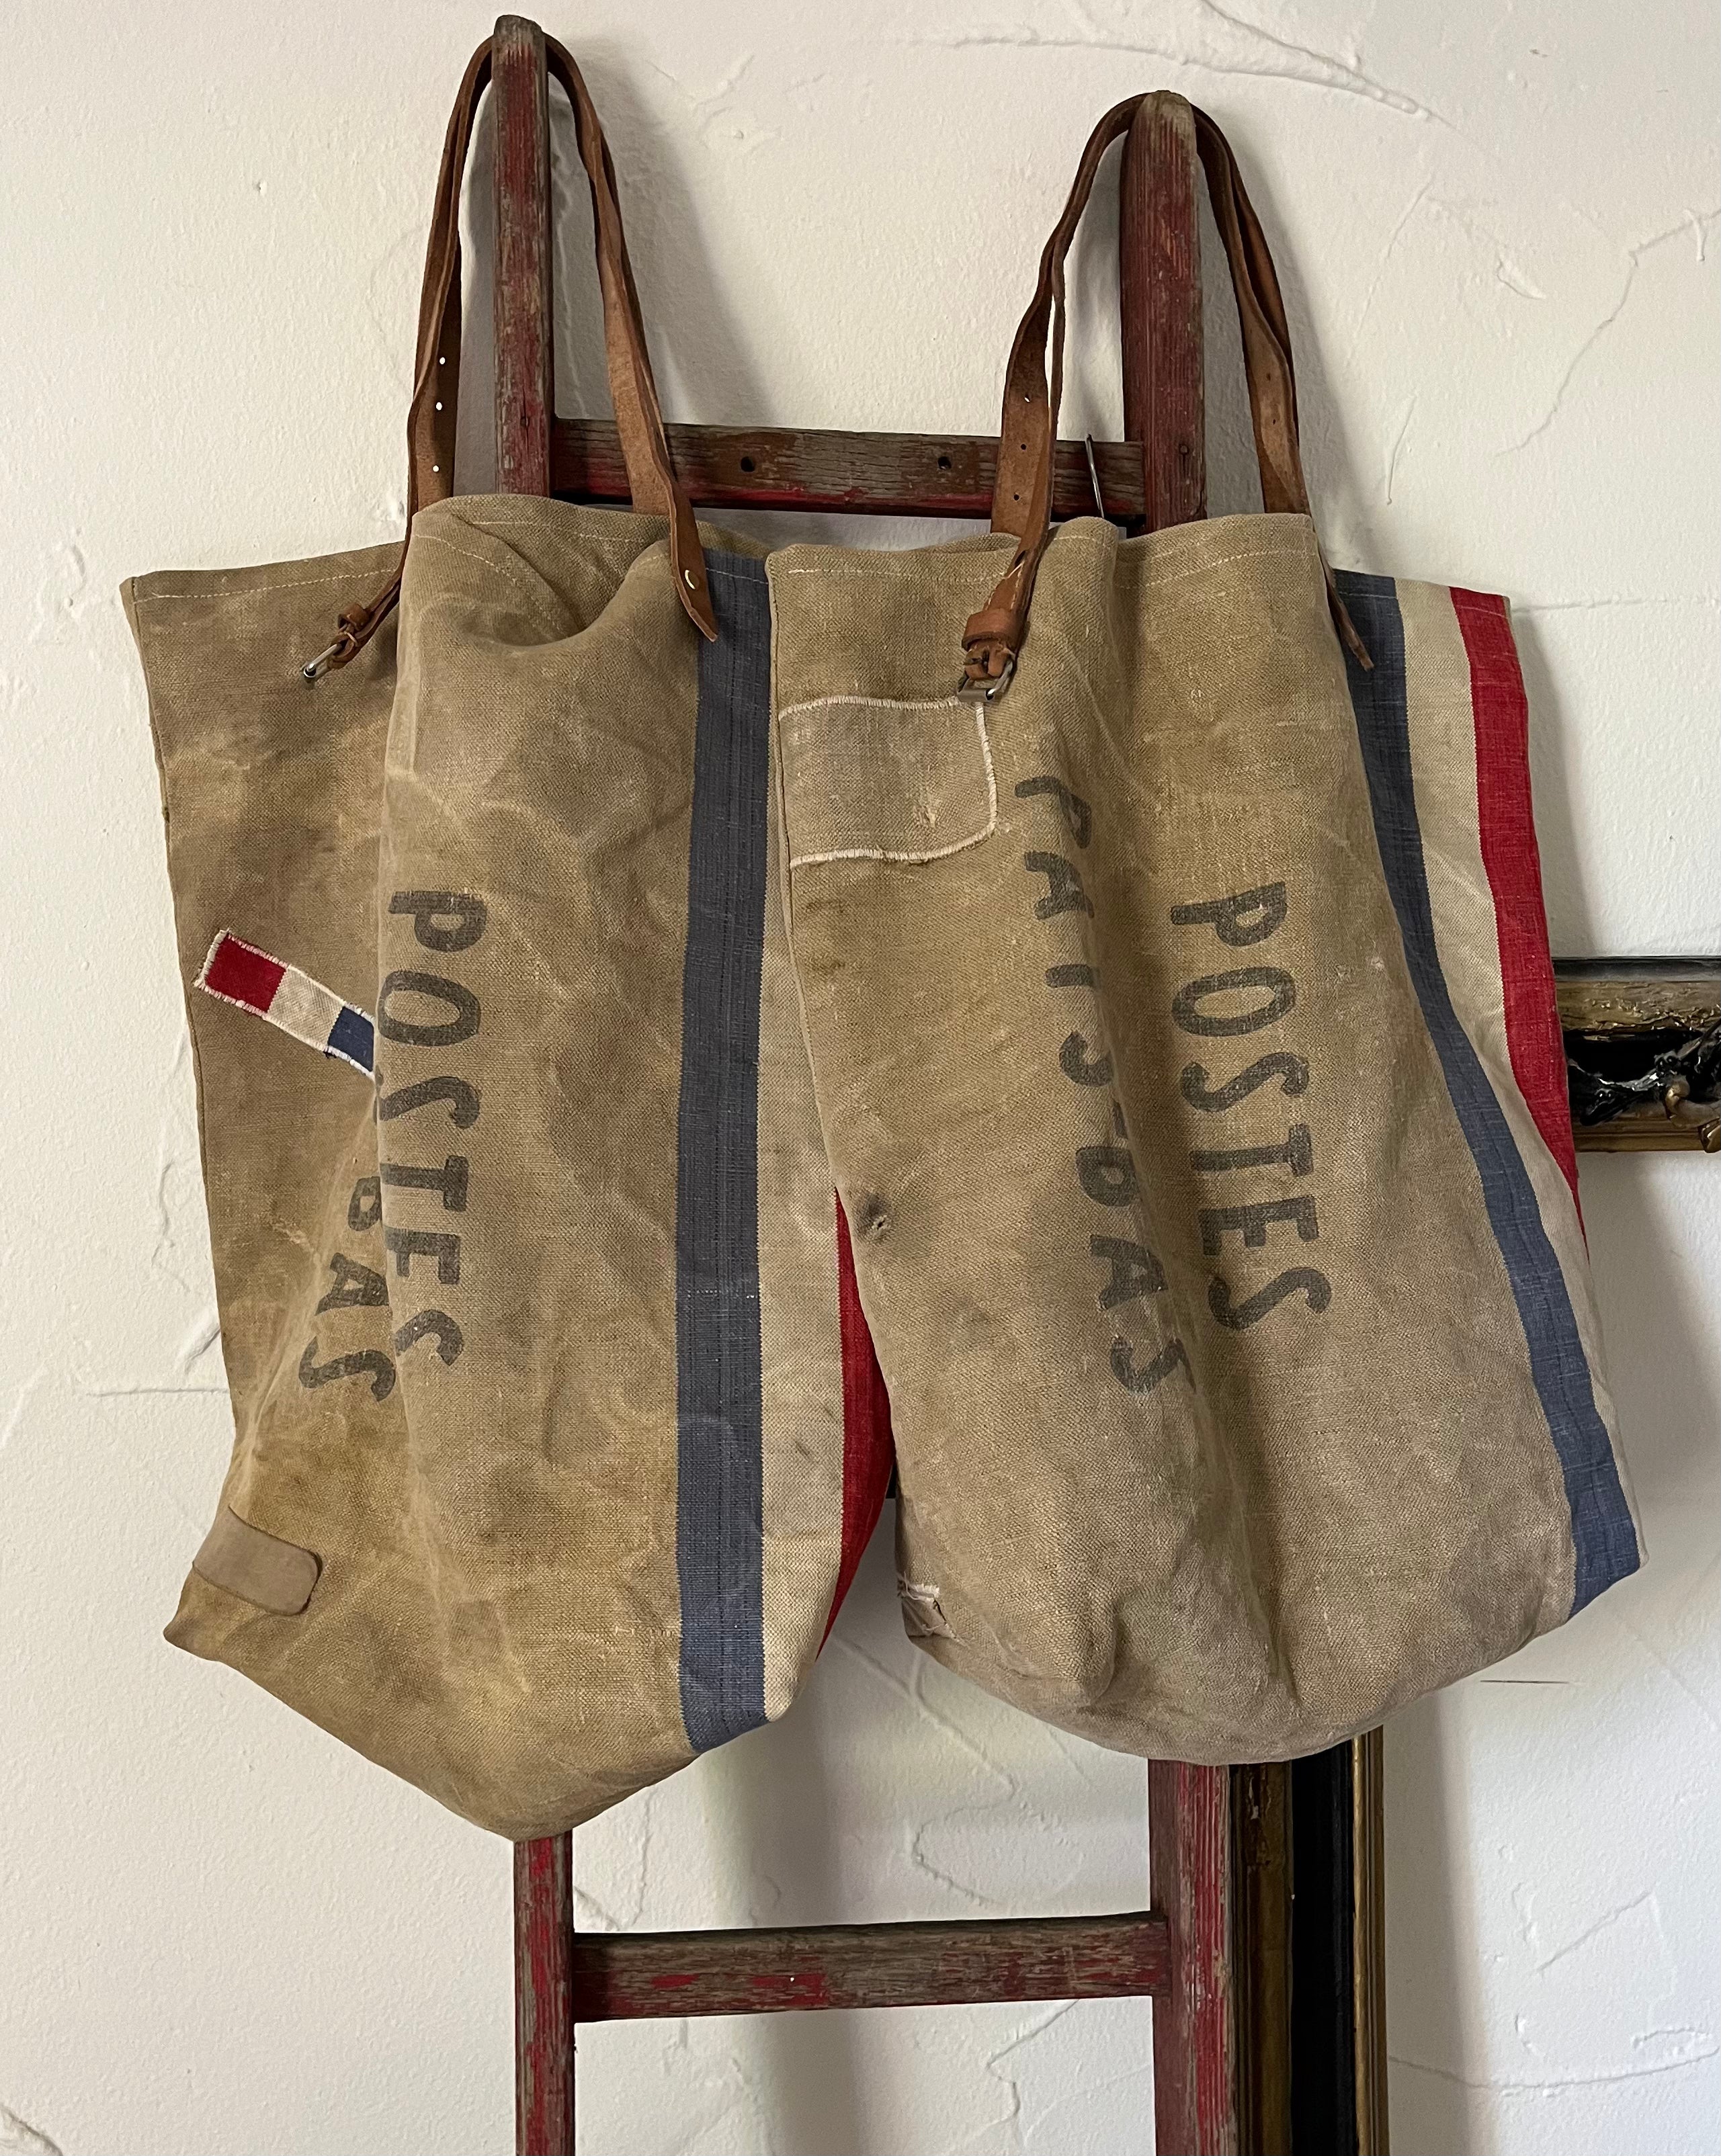 Dutch Postbag: Shopper aus einem alten niederländischen Postsack mit Aufschrift